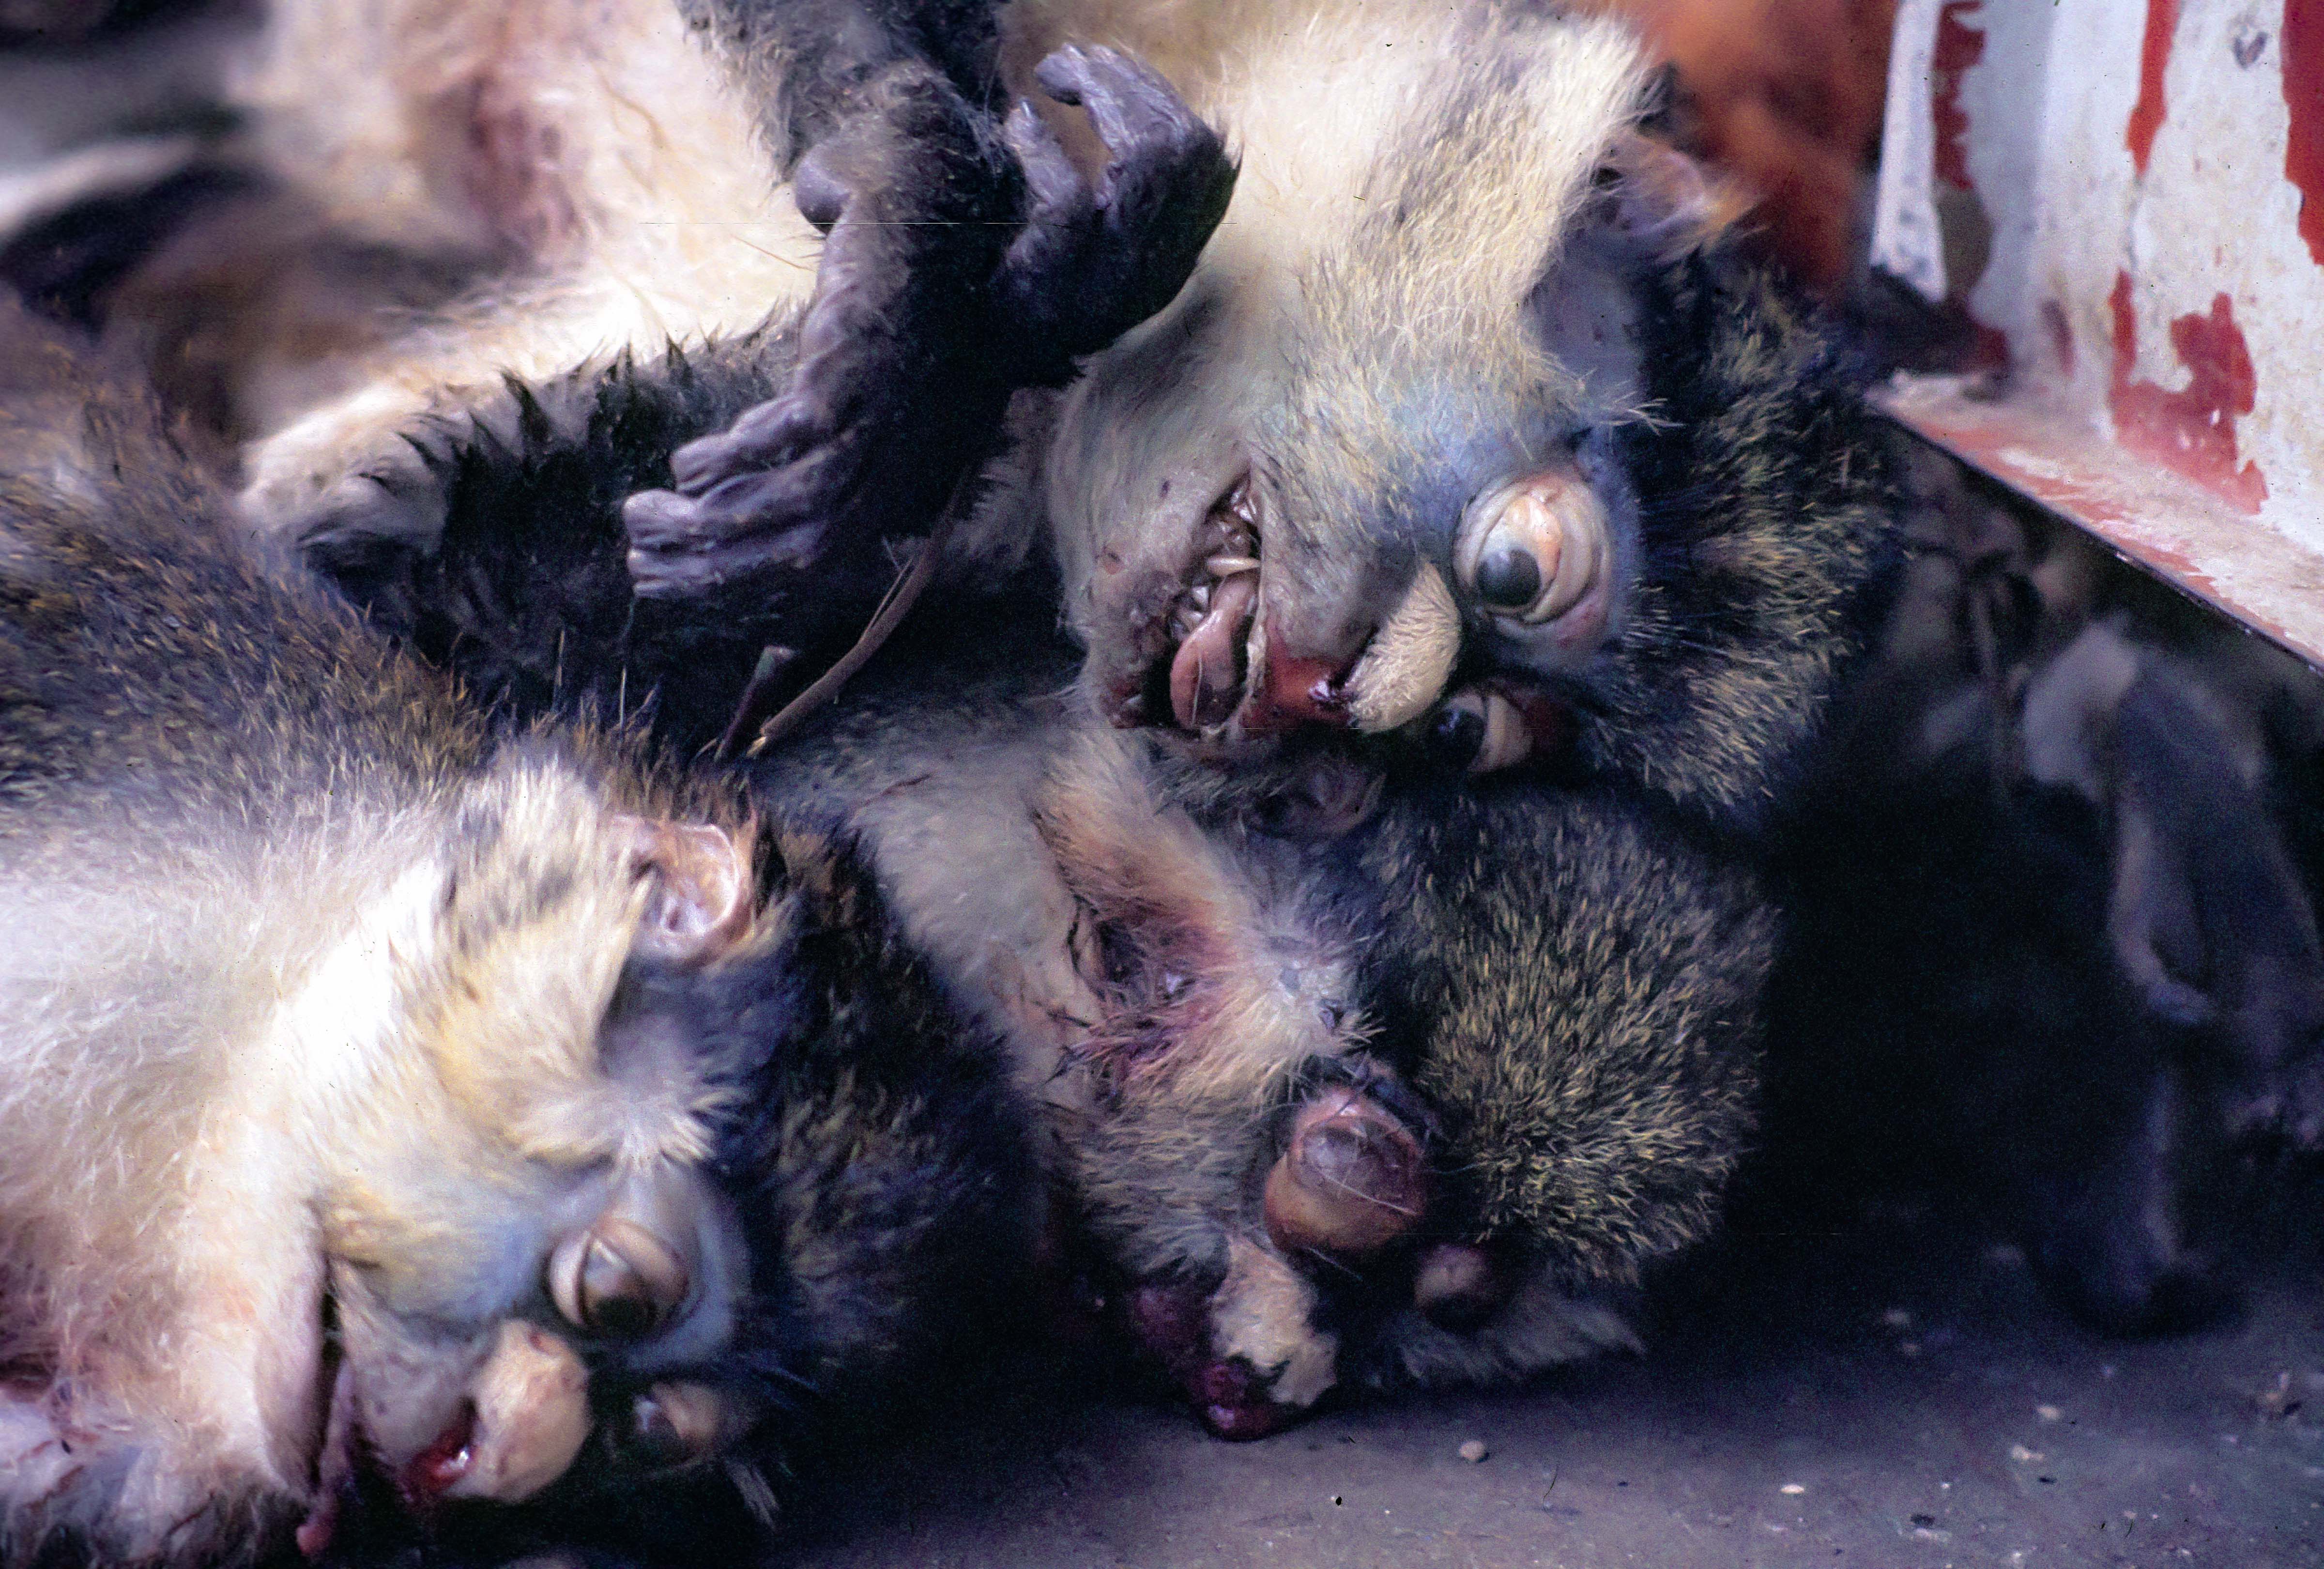 Congo Zaire, Dead Monkeys for Consumption, 1984